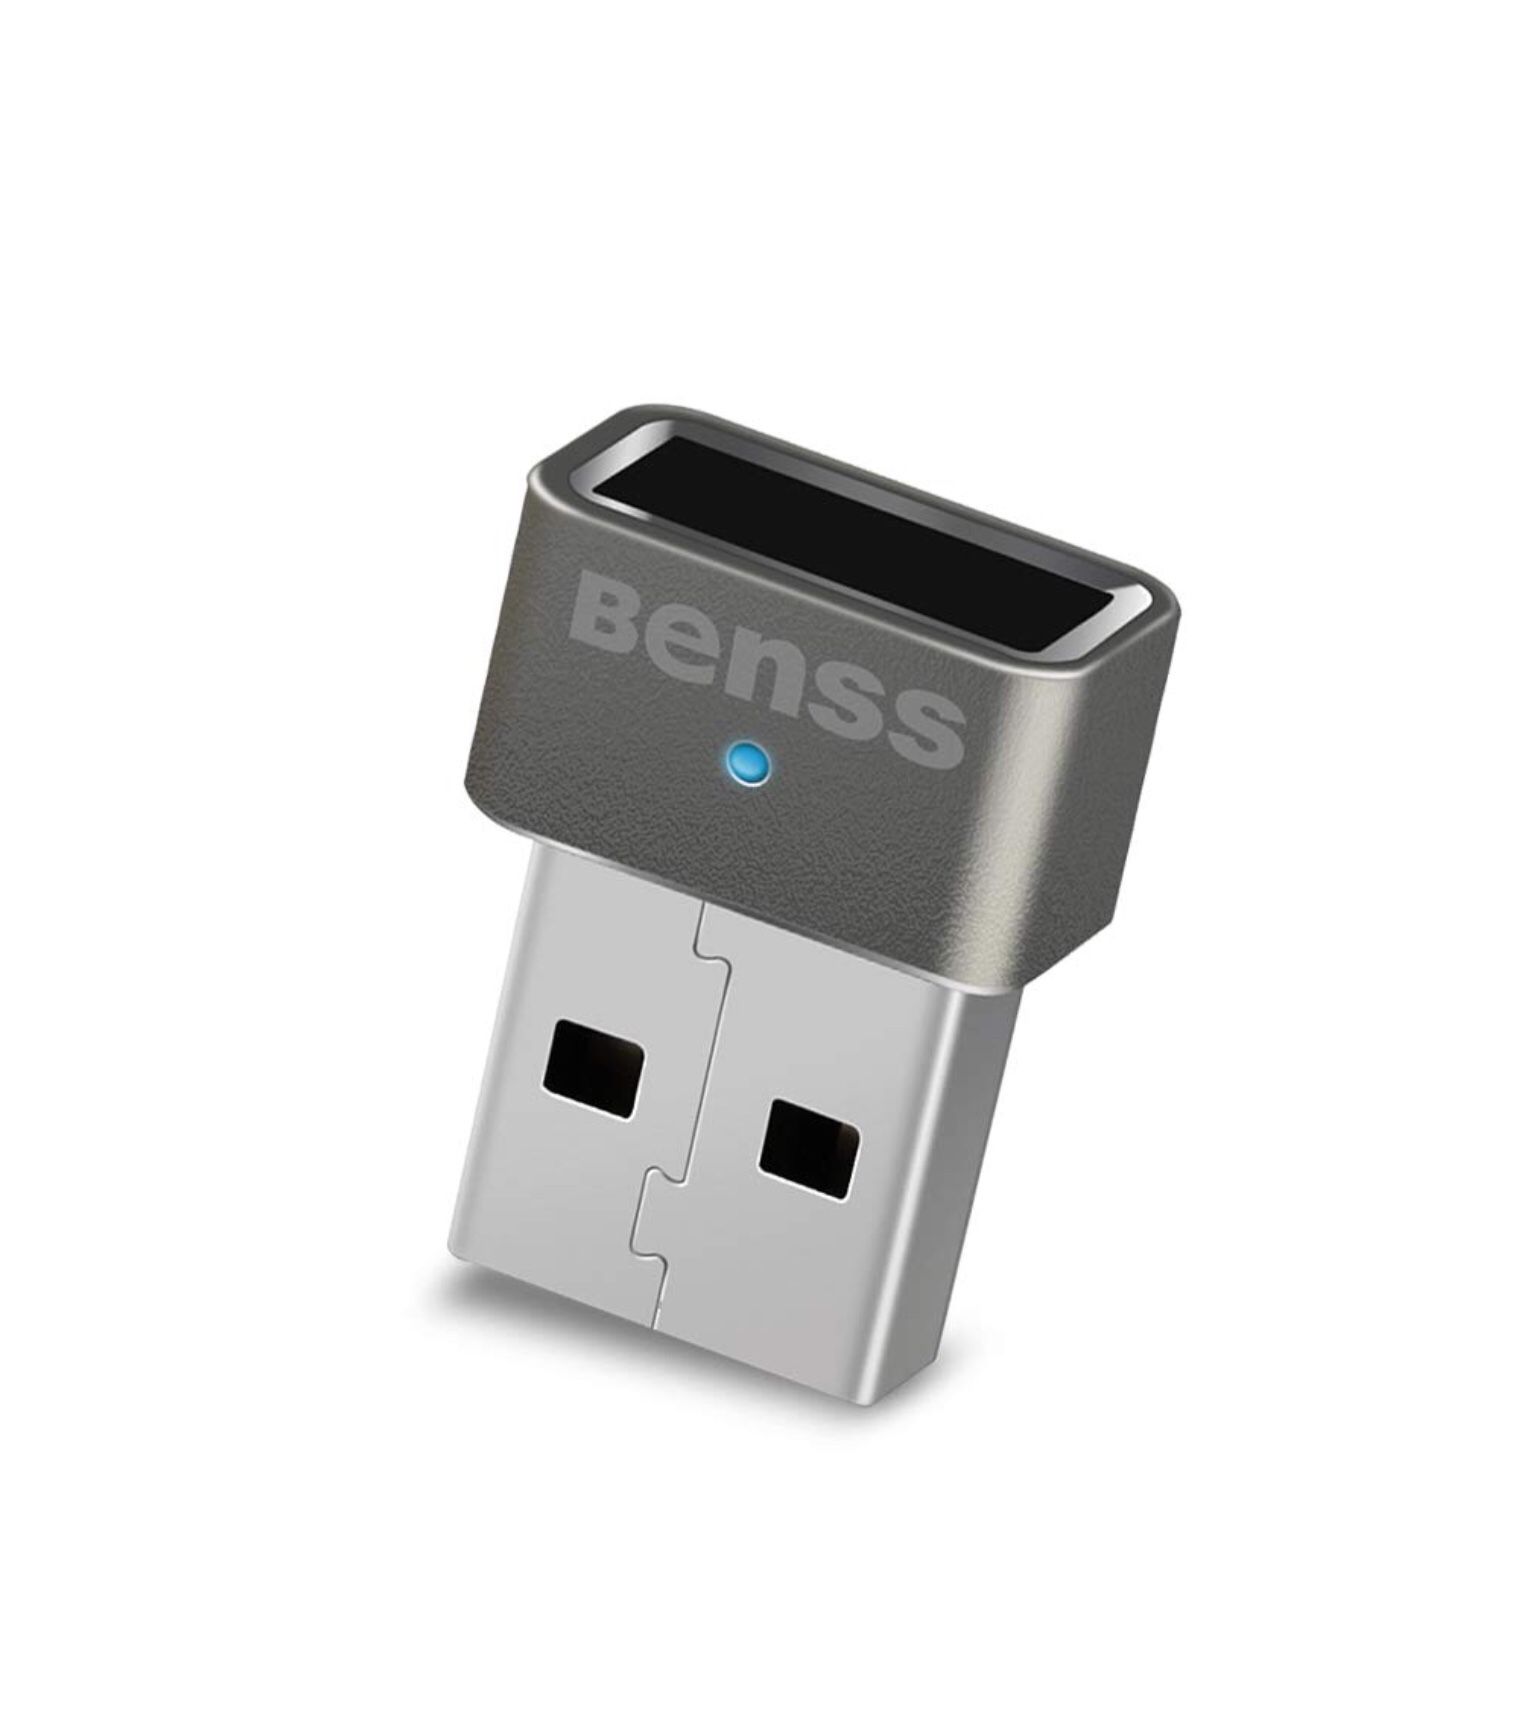 Benss USB Fingerprint Scanner